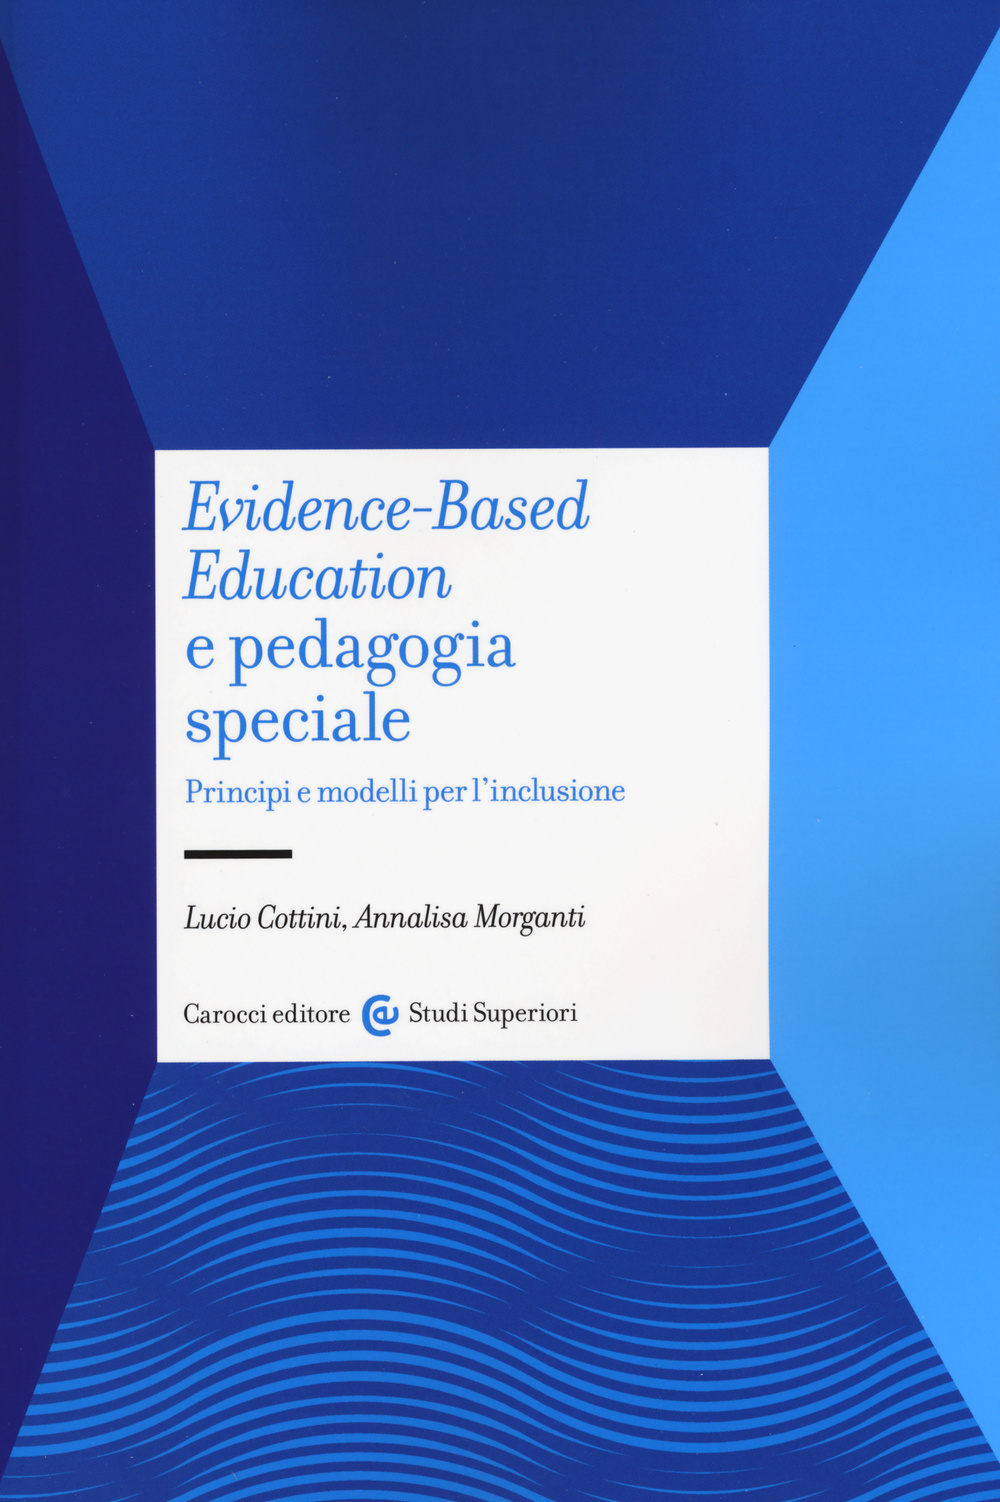 Libri Lucio Cottini / Annalisa Morganti - Evidence-Based Education E Pedagogia Speciale. Principi E Modelli Per L'Inclusione NUOVO SIGILLATO, EDIZIONE DEL 11/06/2015 SUBITO DISPONIBILE